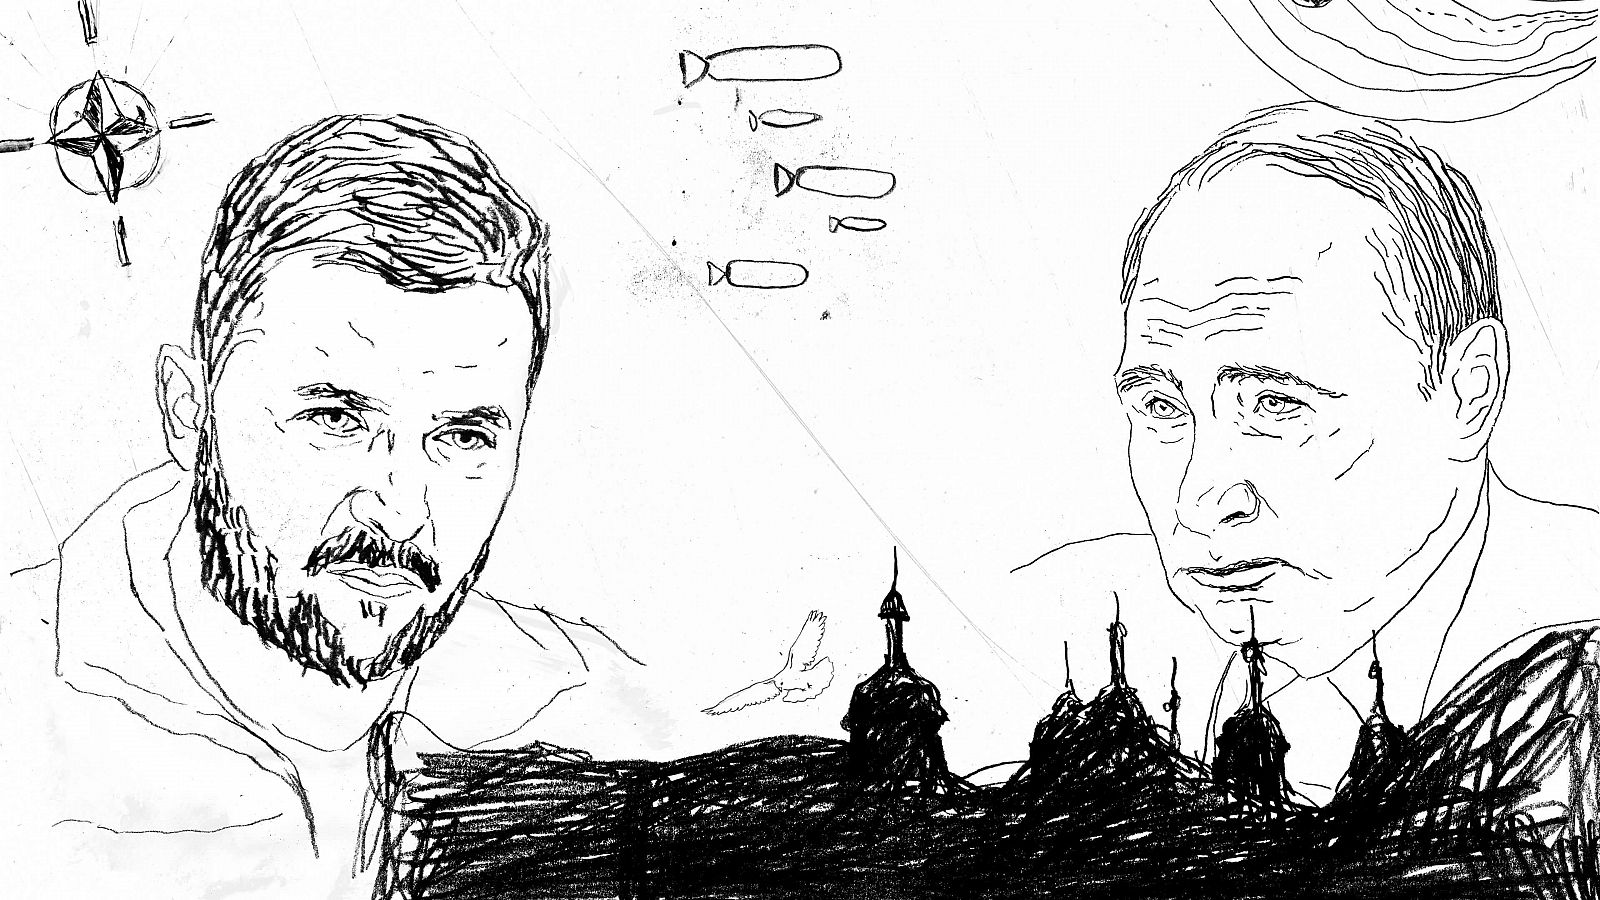 Ilustración de Zelenski y Putin sobre un fondo blanco en el que aparecen dibujados otros elementos como misiles, el símbolo de la OTAN y edificios